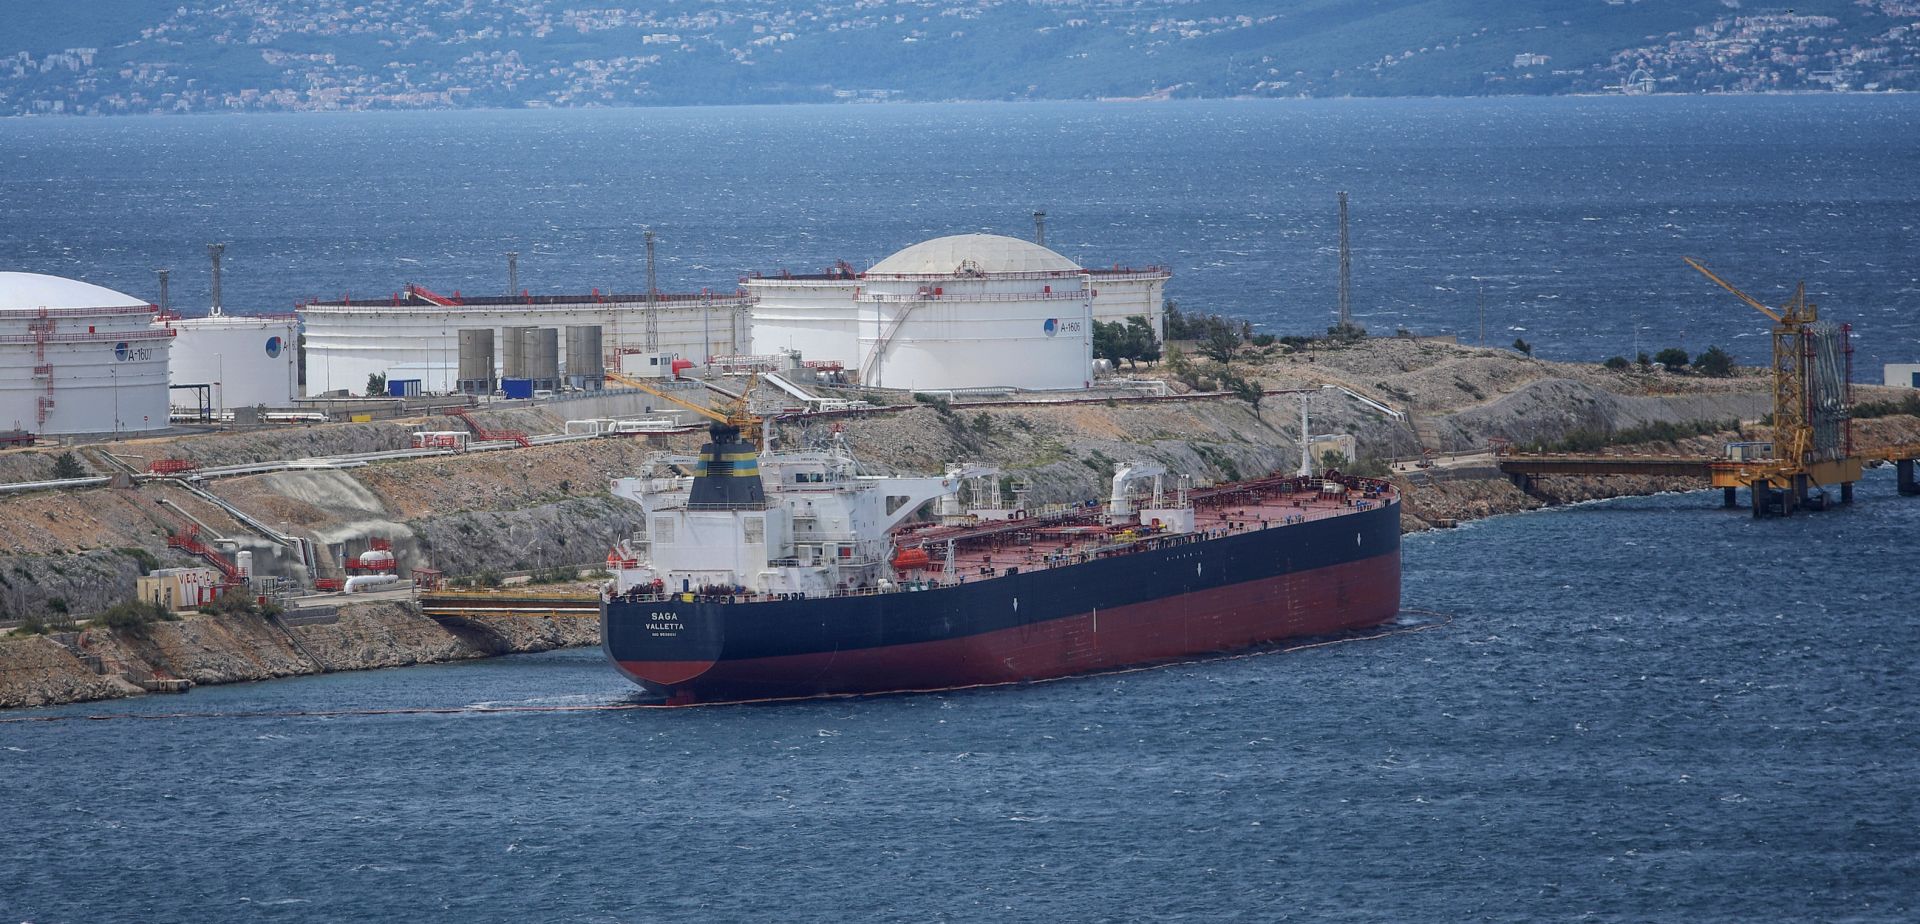 14.06.2018. Omisalj-  Tanker Saga Velletta iskrcava naftu na terminalu Janafa u Omislju.
Photo: Boris Scitar/Vecernji list